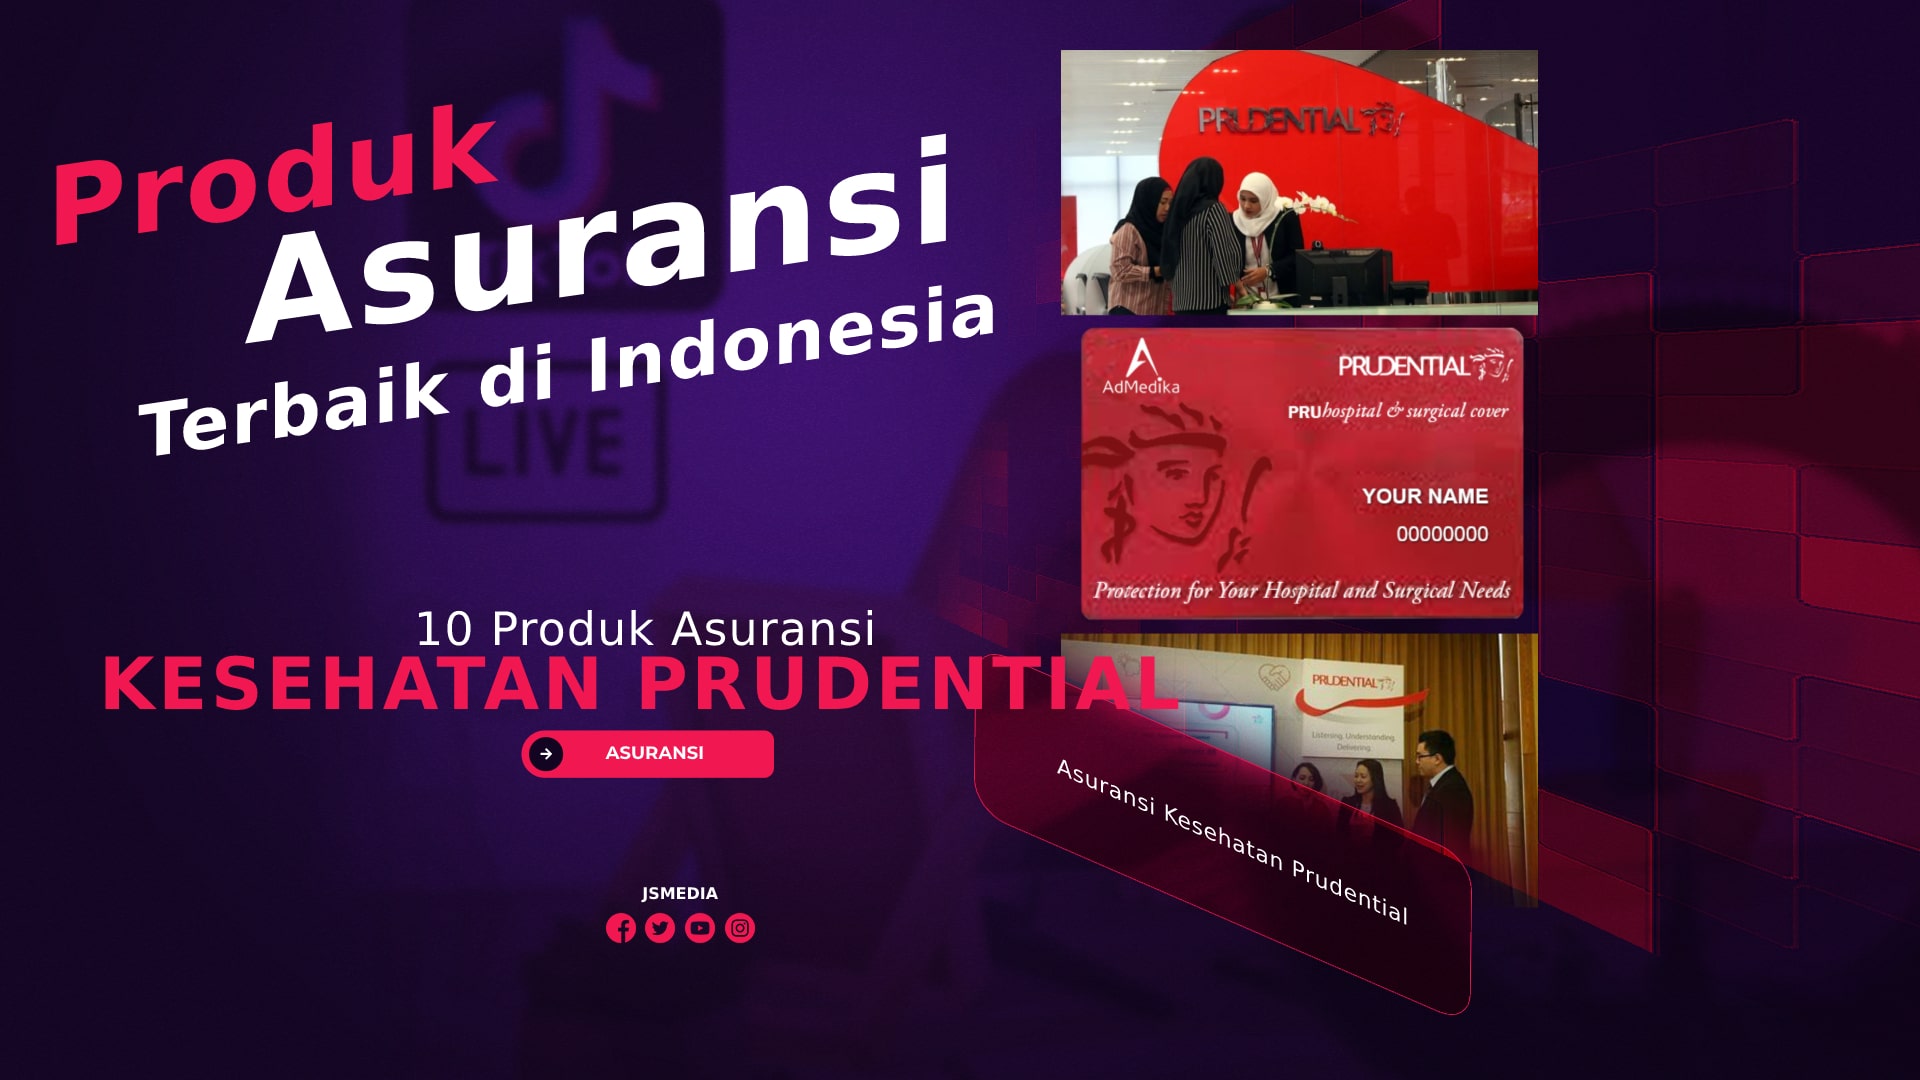 10 Produk Asuransi Kesehatan Prudential, Terbaik di Indonesia